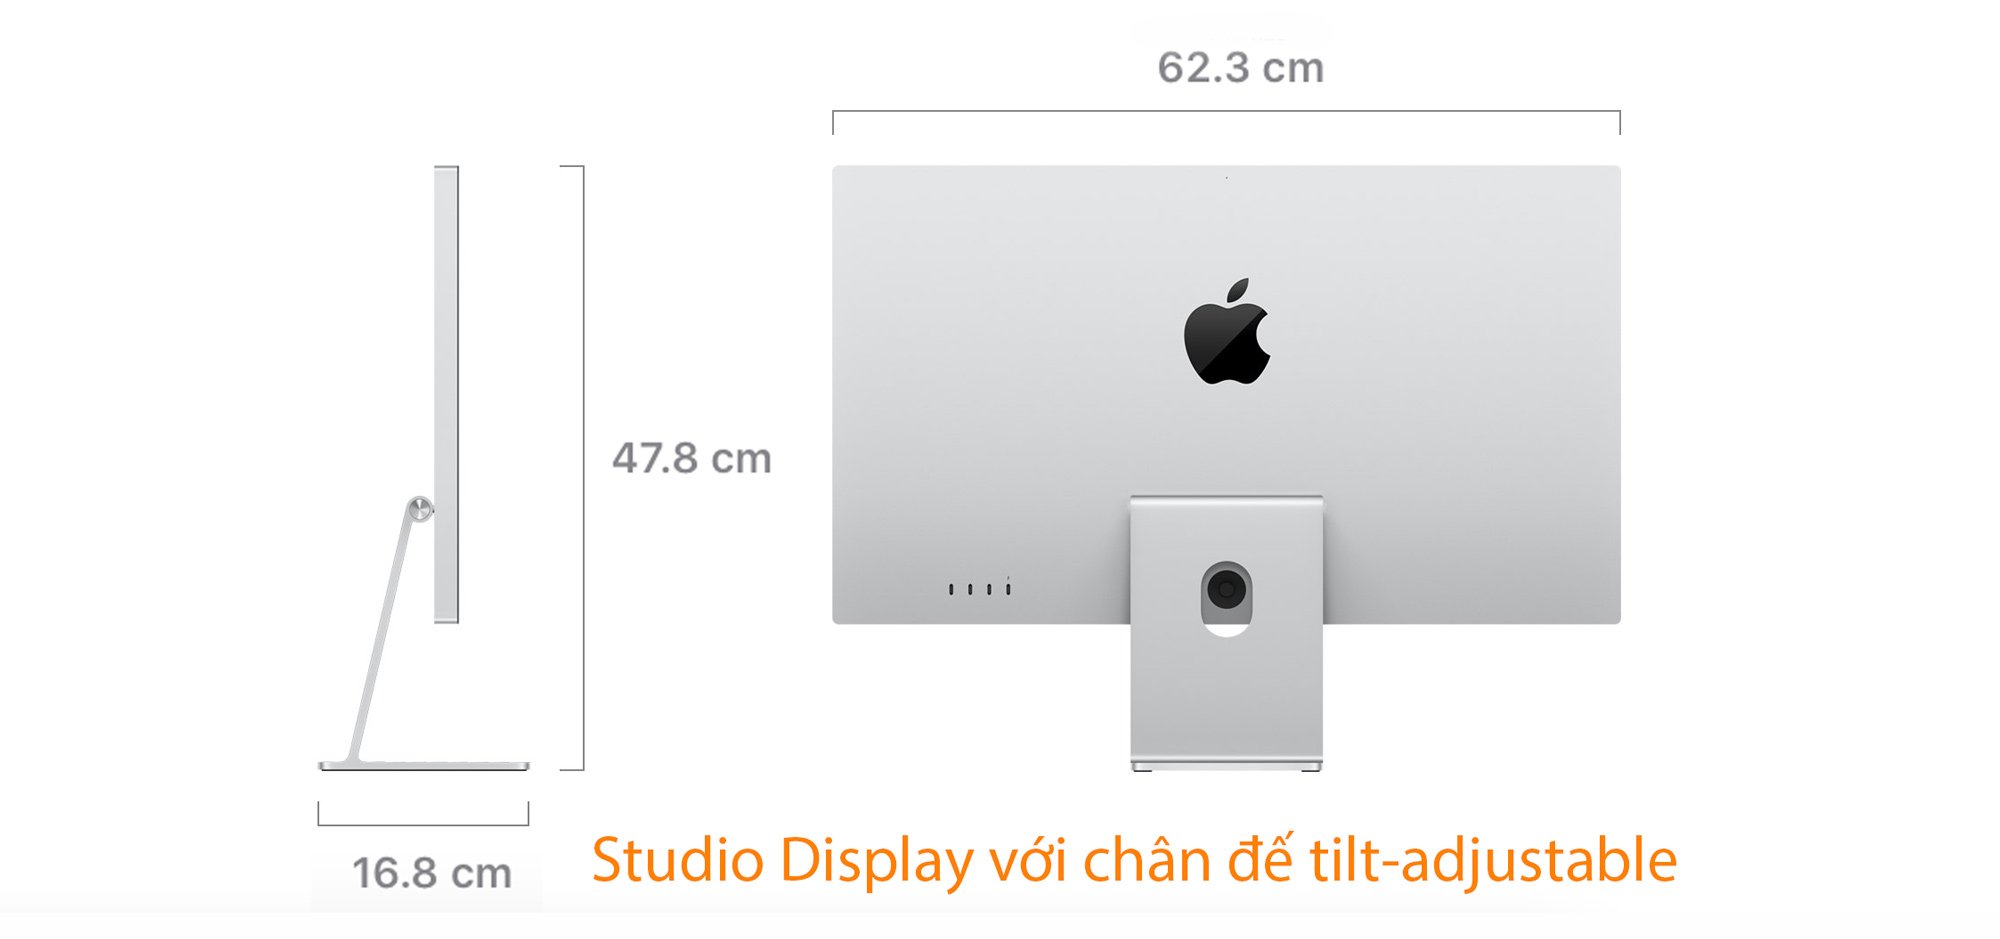 Studio Display có bao nhiêu tùy chọn chân đế ? Và chi tiết từng loại ?